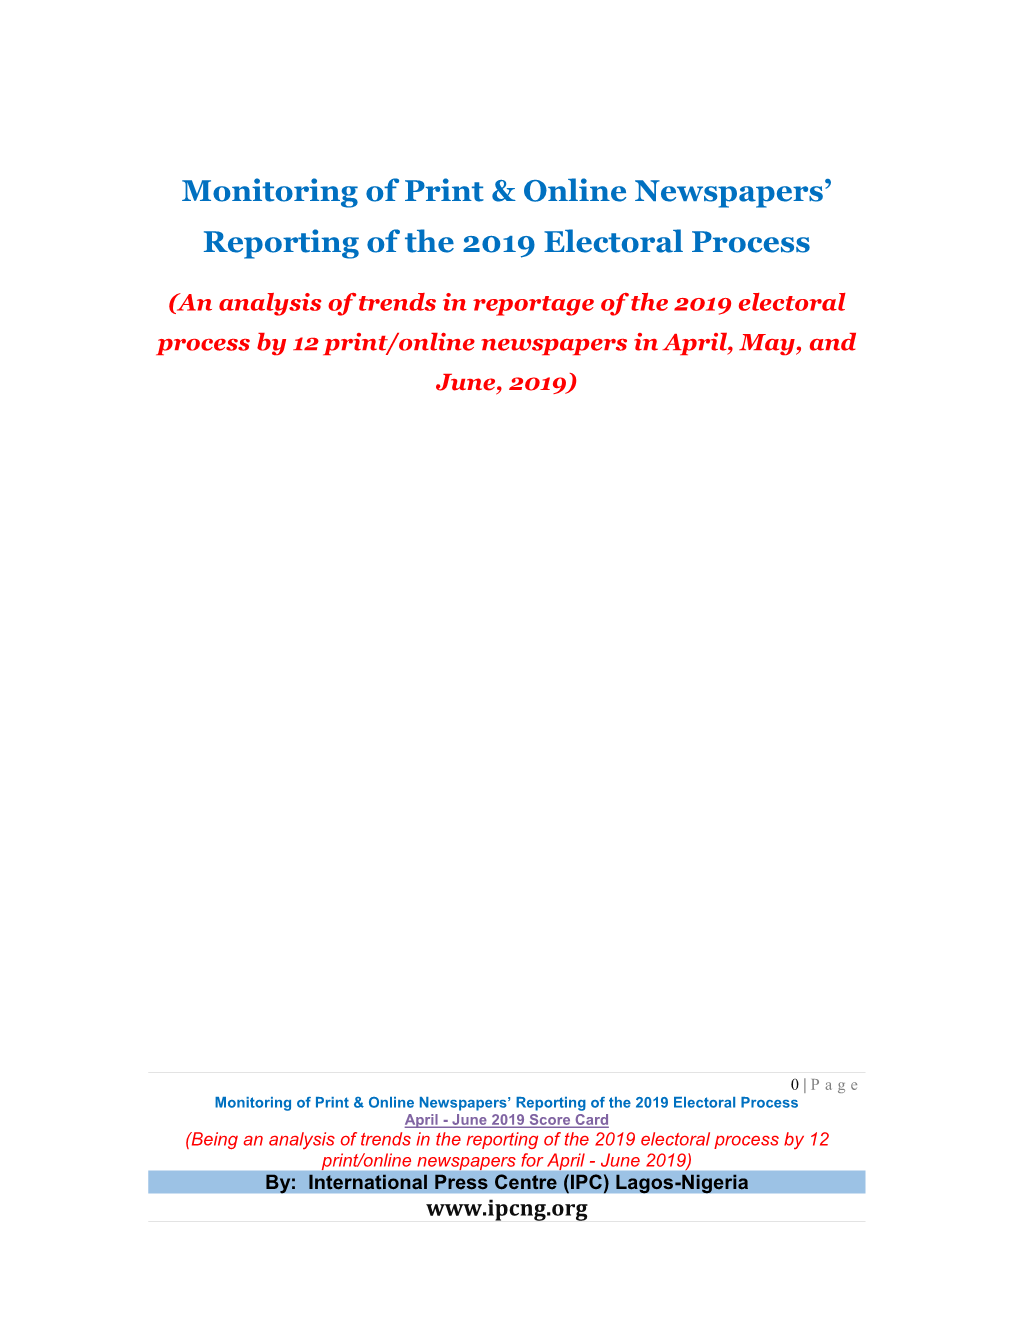 IPC. April-June 2019 Media Monitoring Report